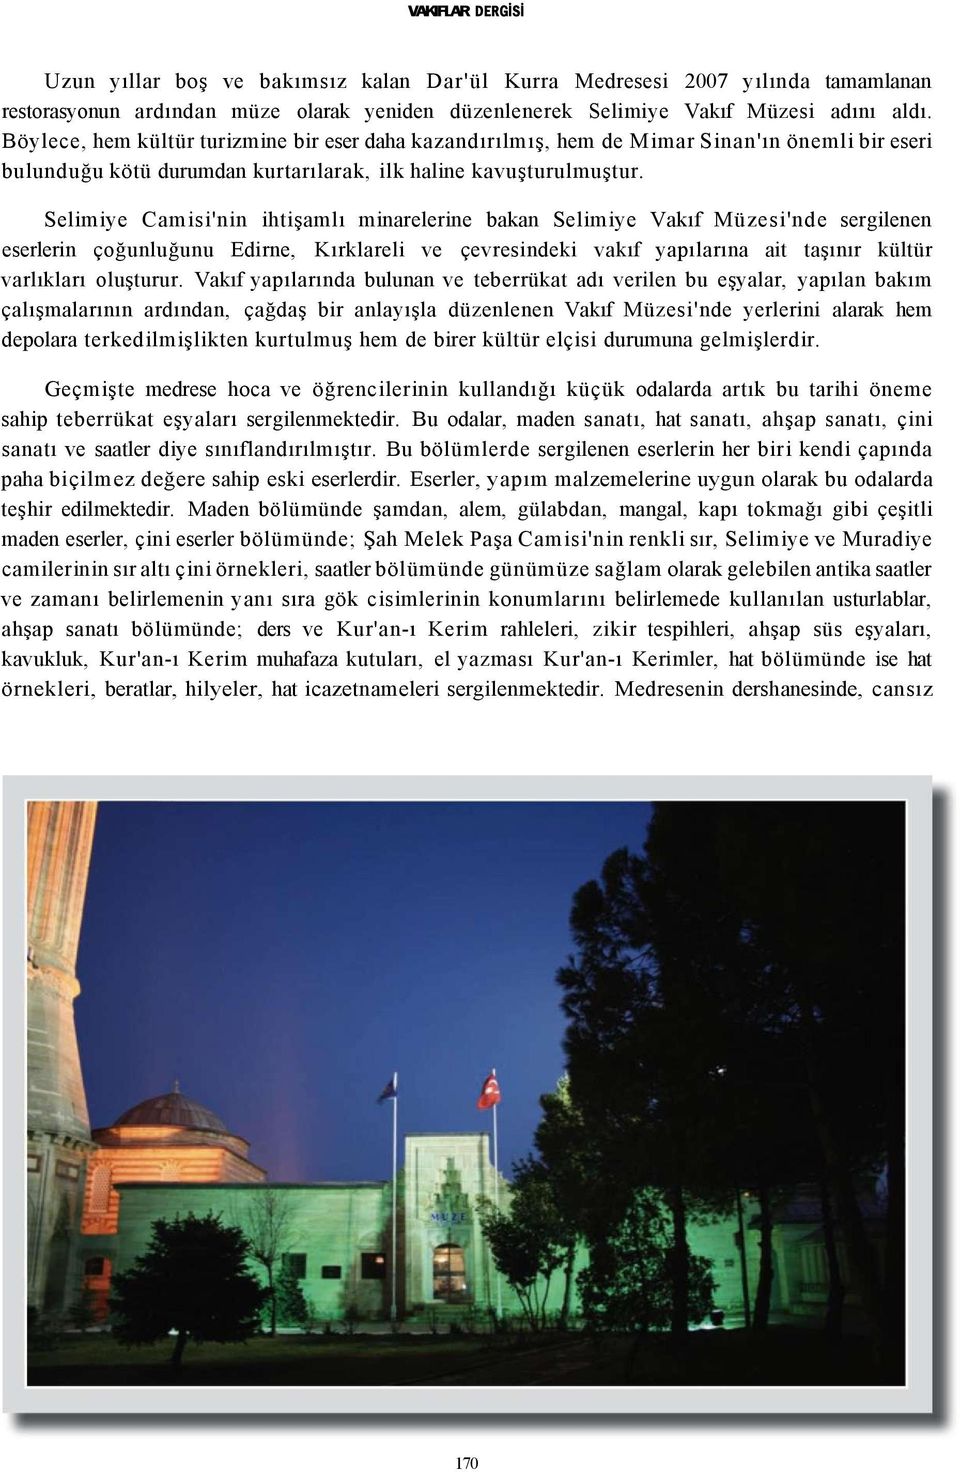 Selimiye Camisi'nin ihtişamlı minarelerine bakan Selimiye Vakıf Müzesi'nde sergilenen eserlerin çoğunluğunu Edirne, Kırklareli ve çevresindeki vakıf yapılarına ait taşınır kültür varlıkları oluşturur.